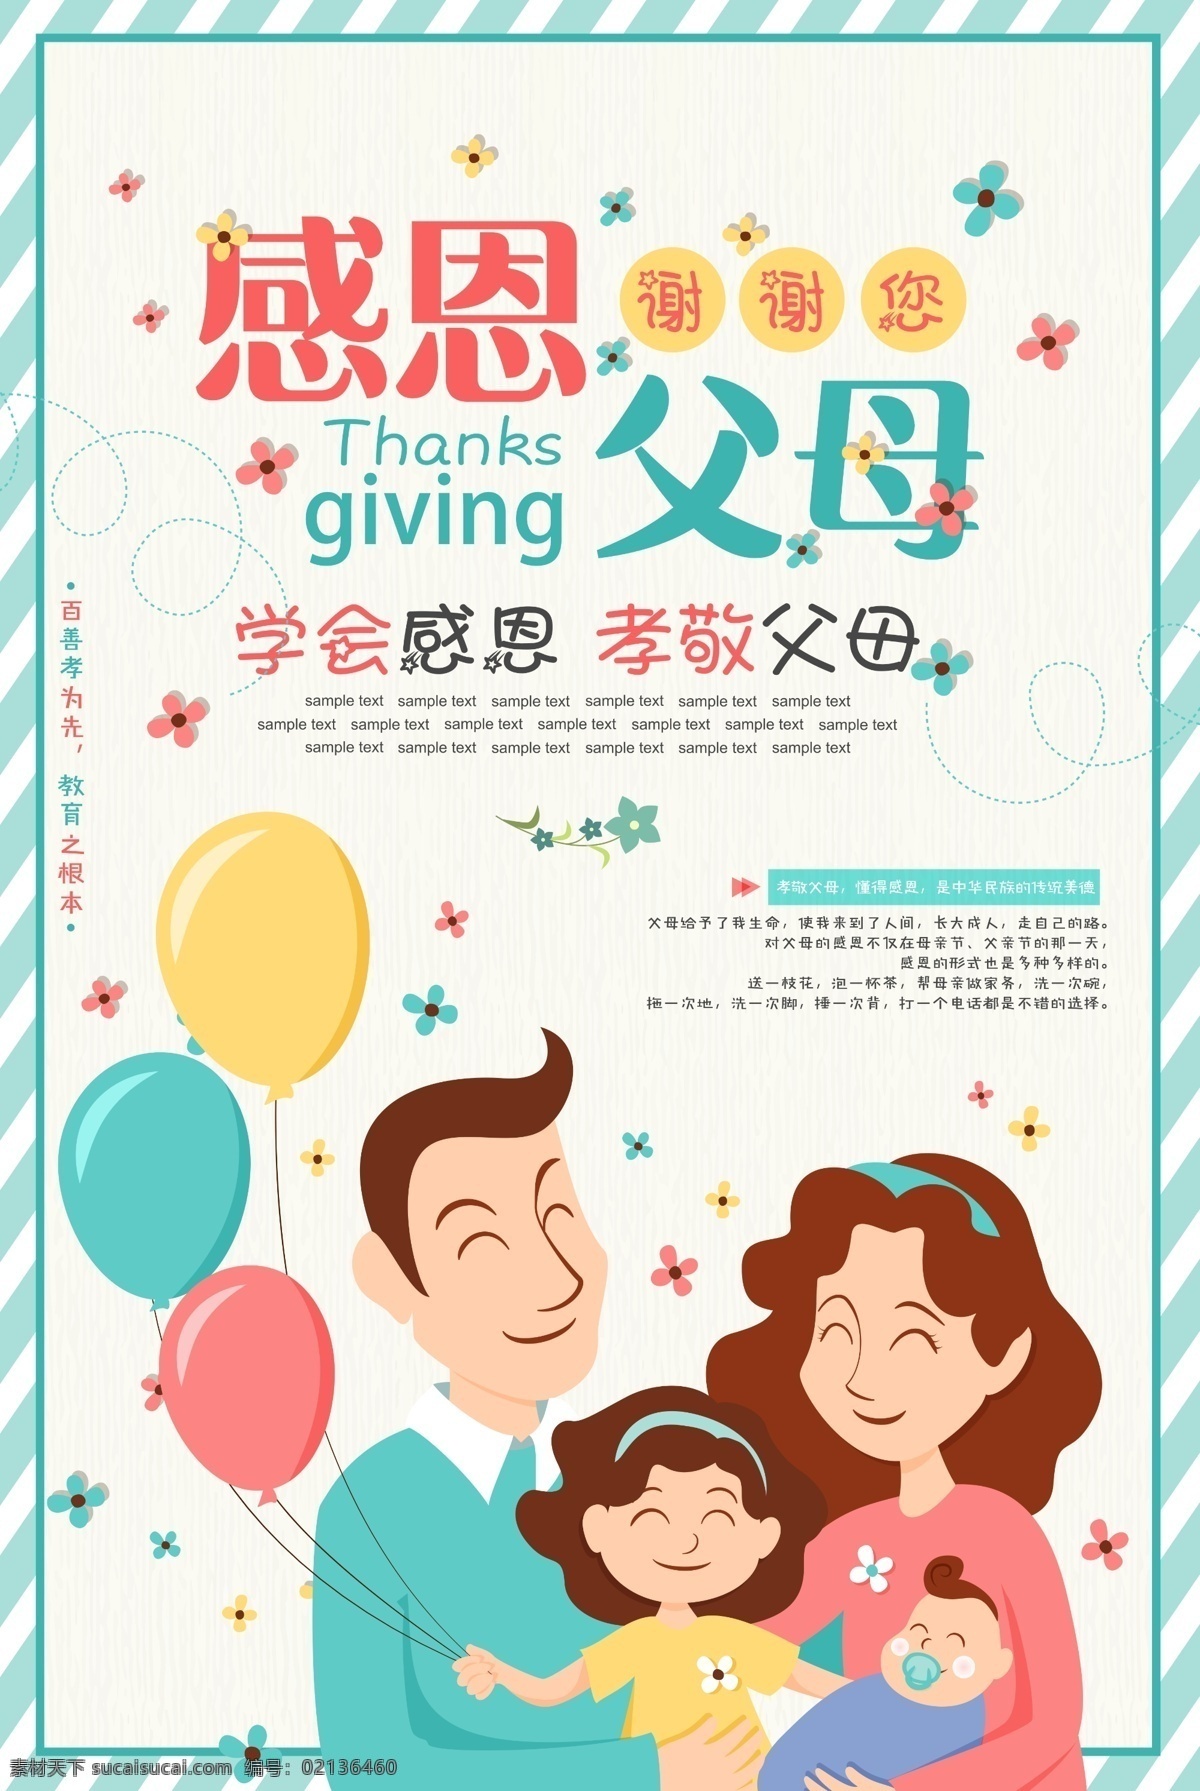 感恩父母 孝 一家人 一家四口 卡通 气球 花瓣 扁平化 边框 学会感恩 孝敬父母 谢谢你 和谐中国